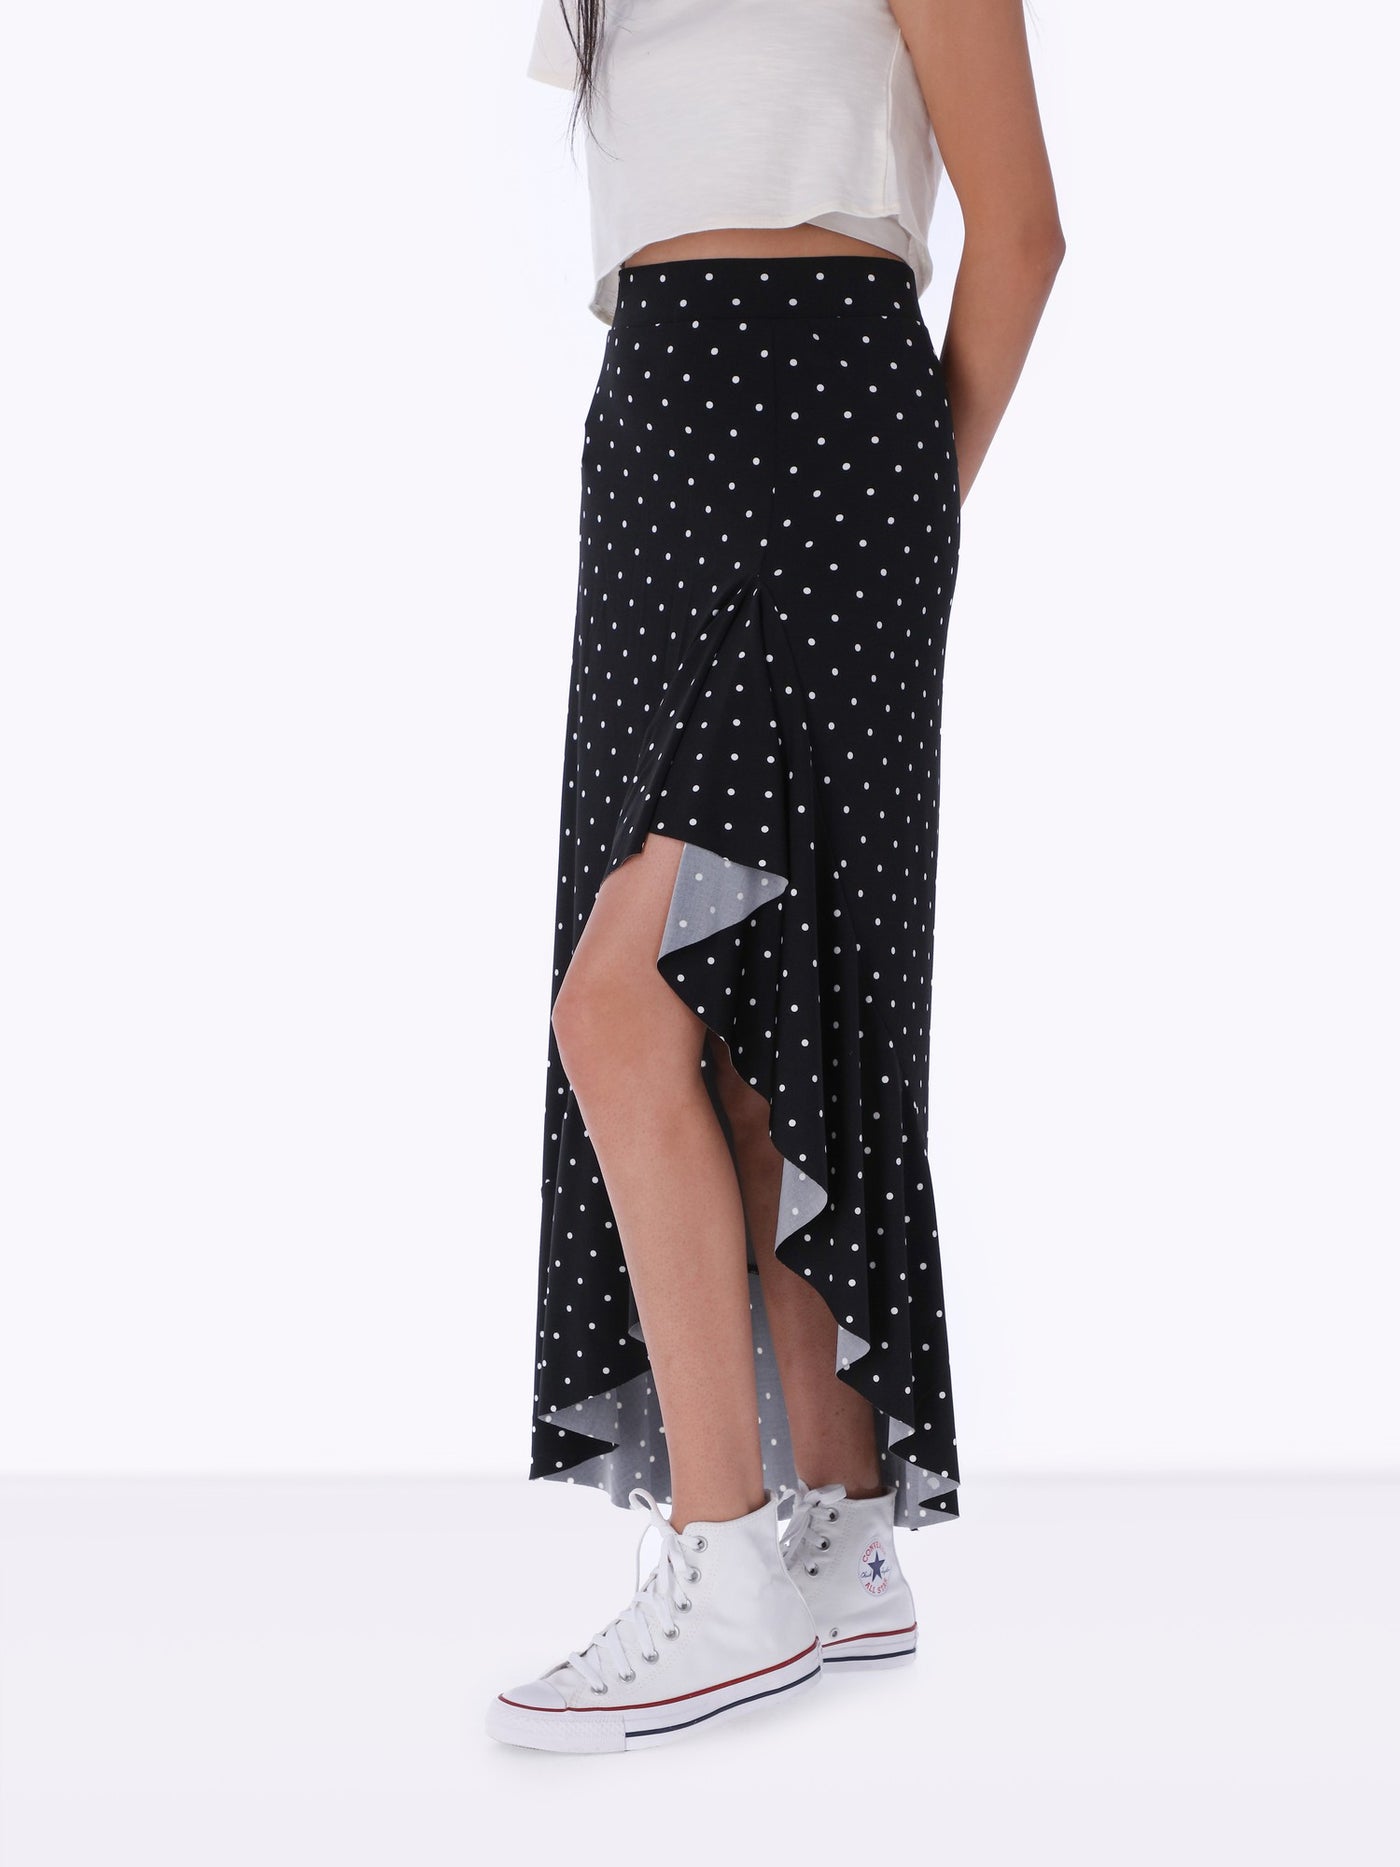 Asymmetric Skirt - Polka Dot